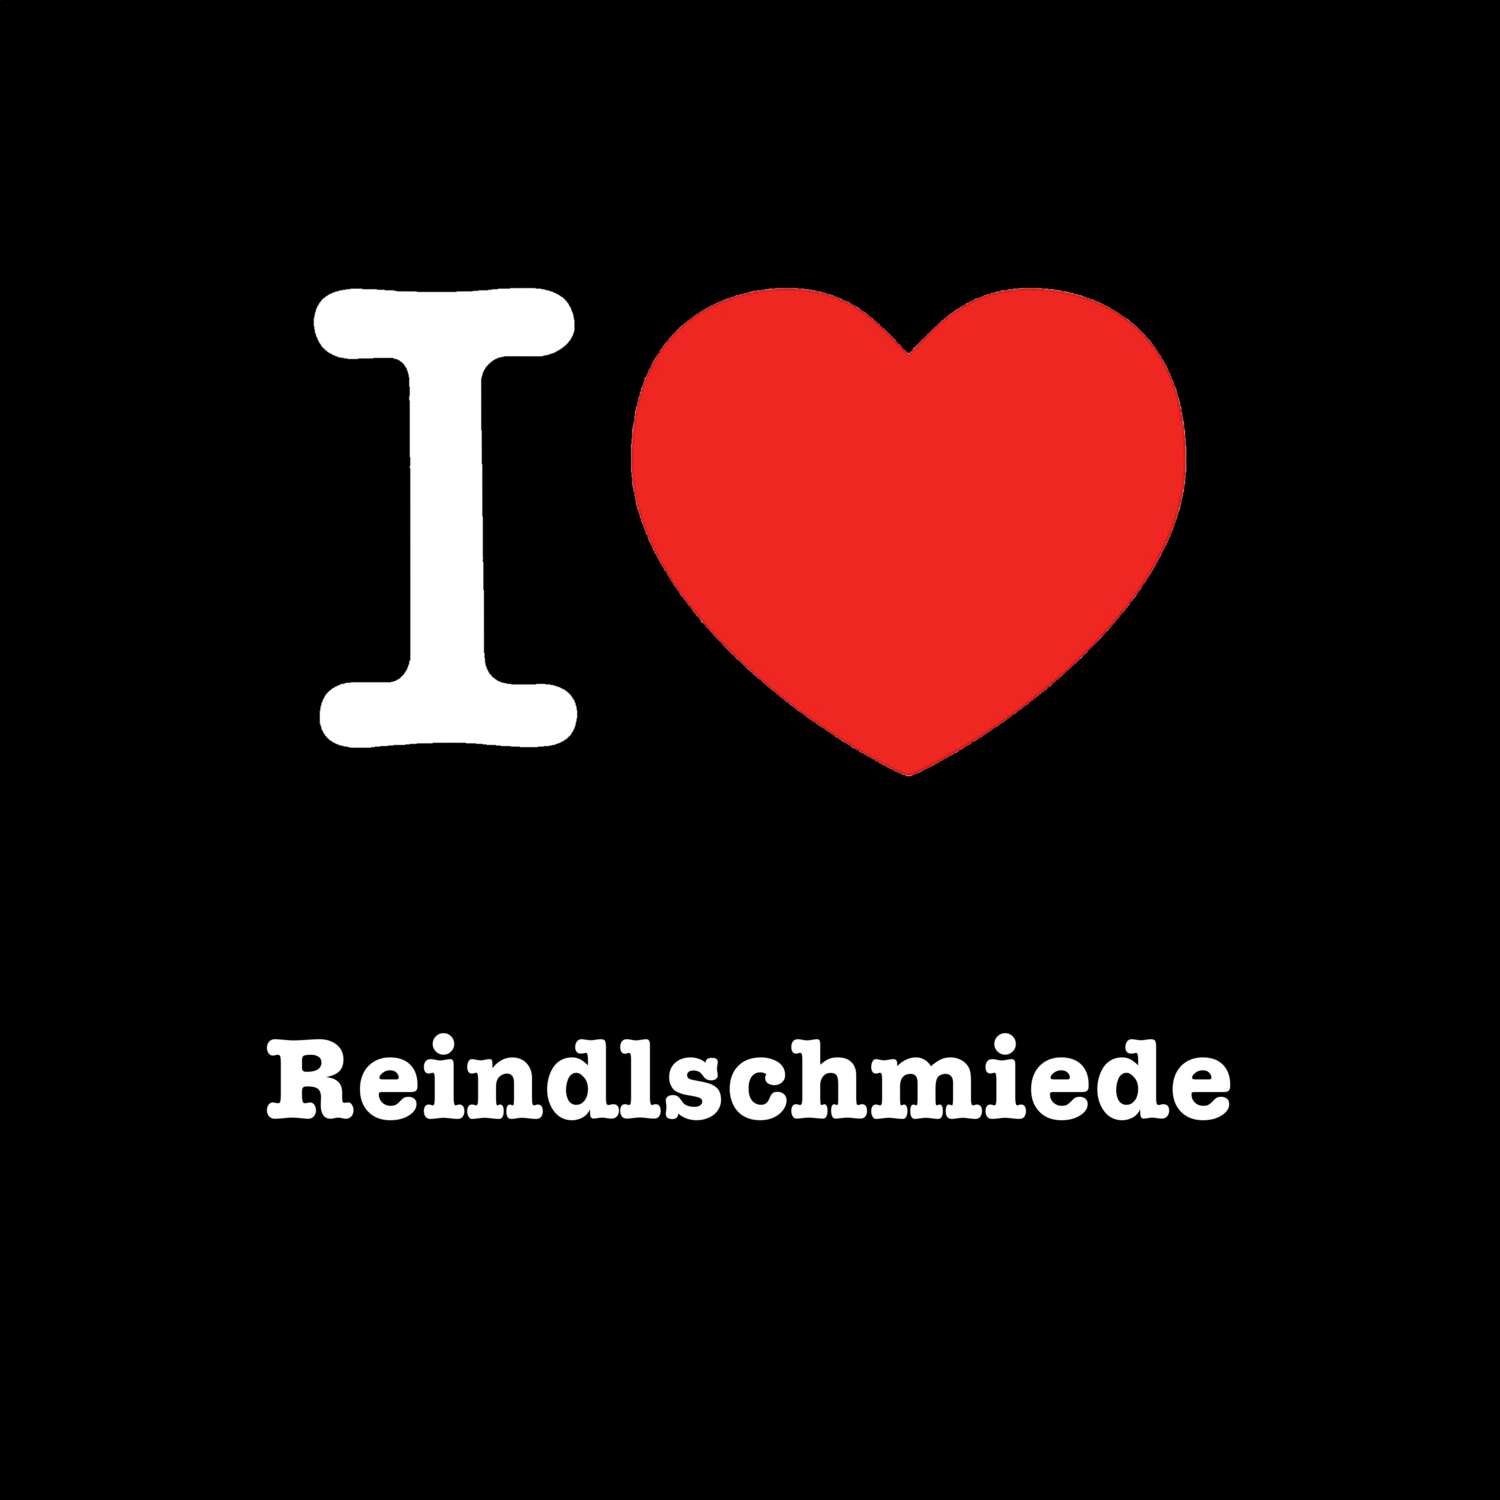 Reindlschmiede T-Shirt »I love«